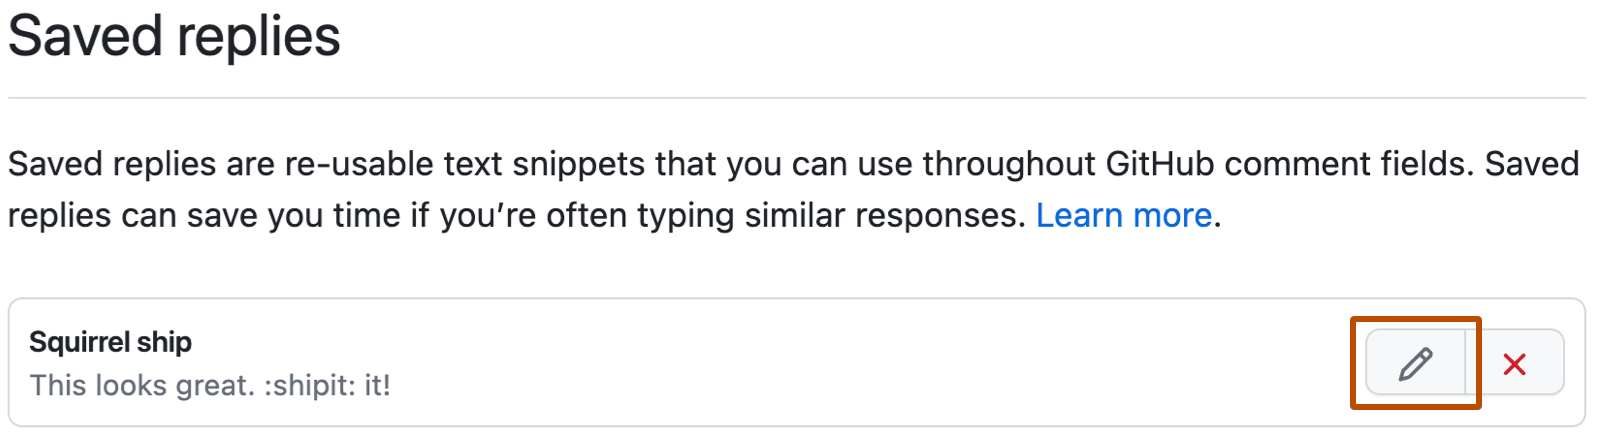 Captura de tela das configurações do GitHub para "Respostas salvas". À direita da resposta salva "Enviar esquilo", há um botão de edição com um ícone de lápis que tem o contorno em laranja escuro.